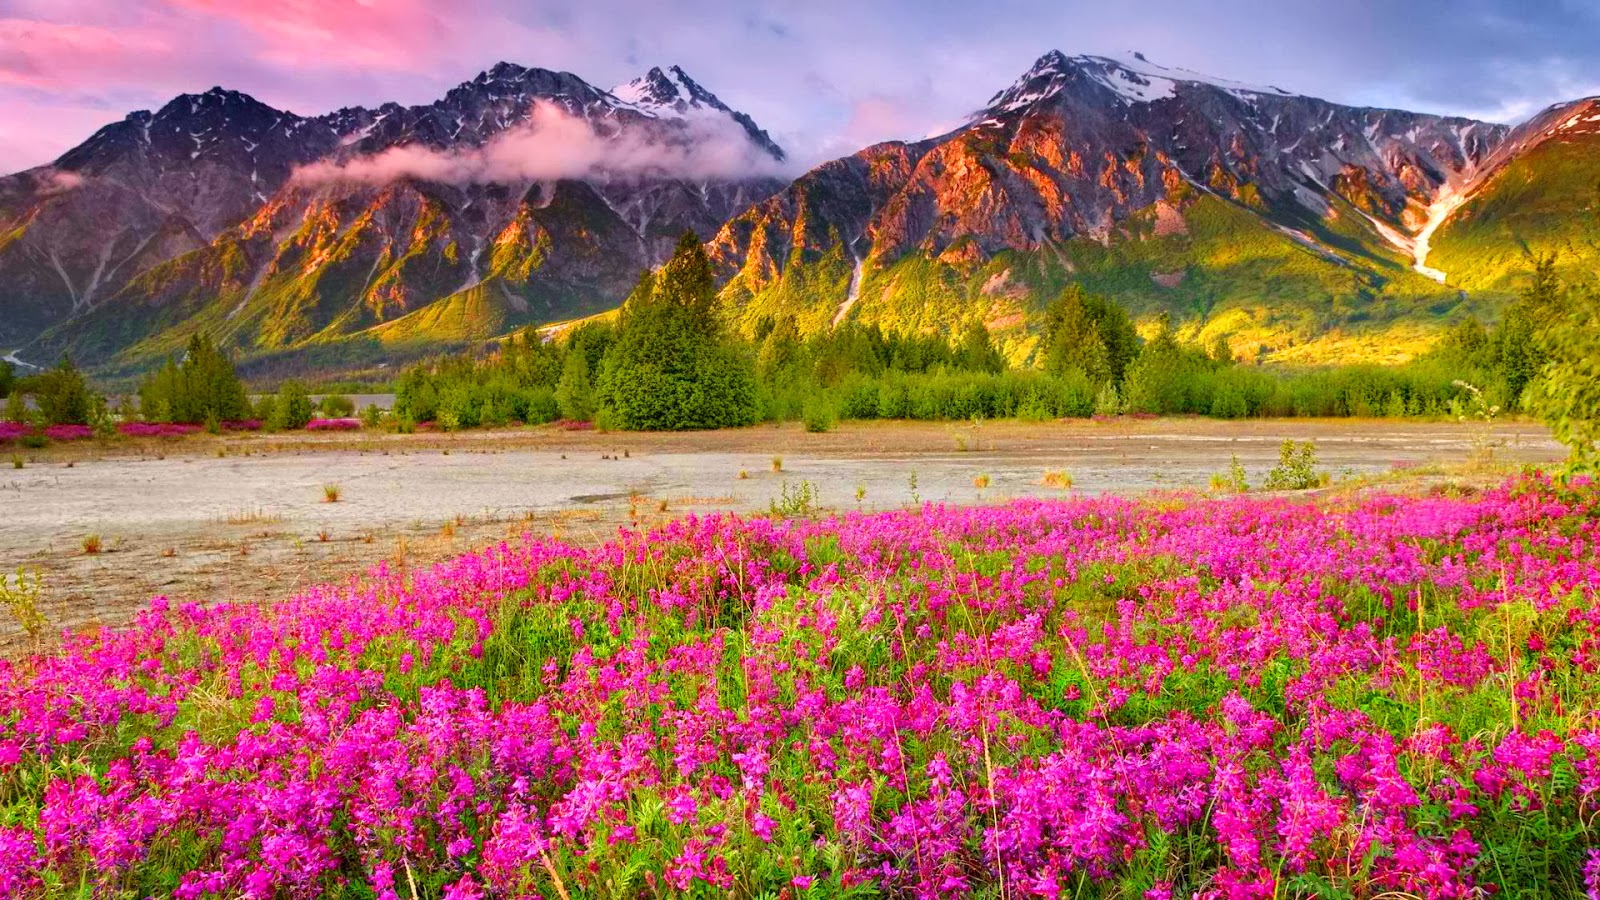 paisaje fondo de pantalla hd descarga gratuita,paisaje natural,naturaleza,flor,montaña,flor silvestre